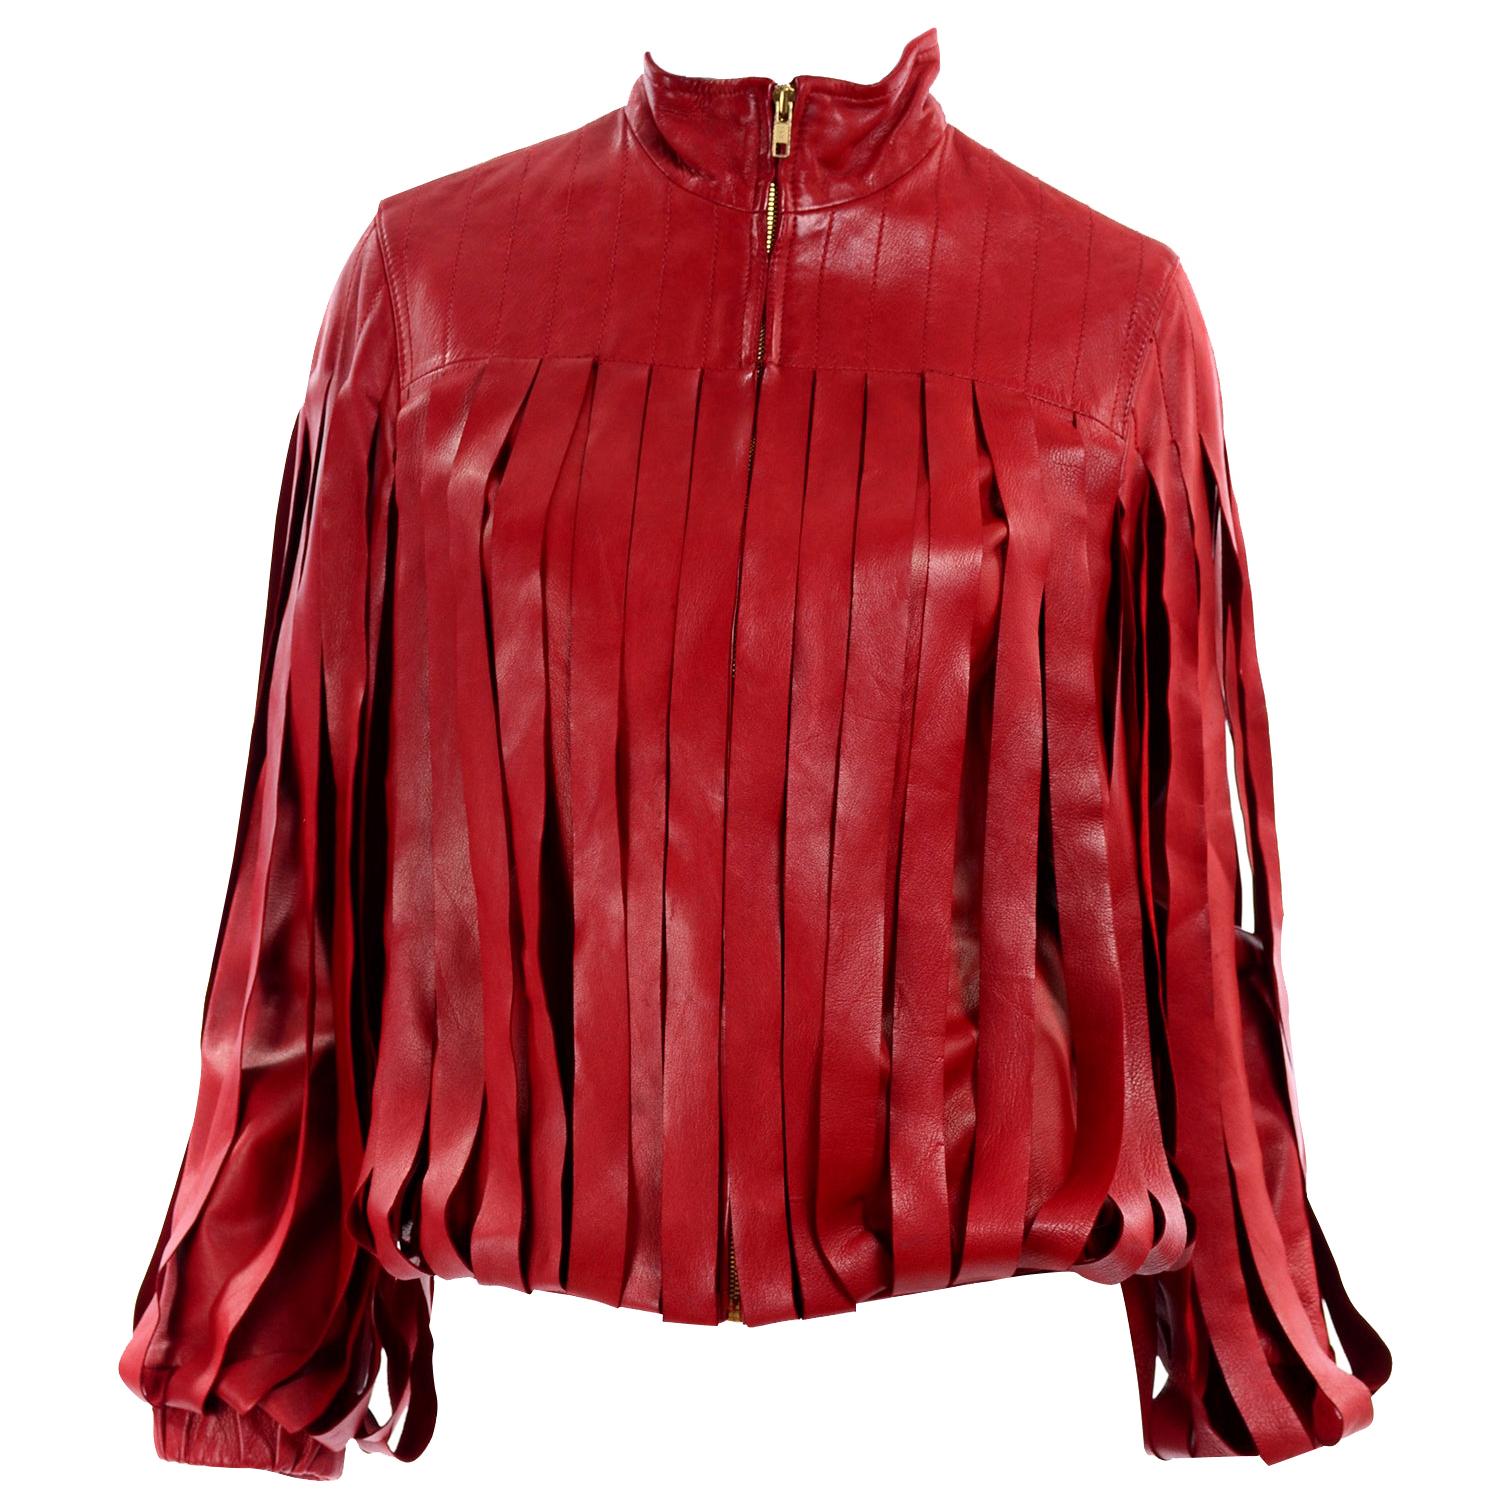 Bottega Veneta Burgundy Leather Jacket With Fringe Panels